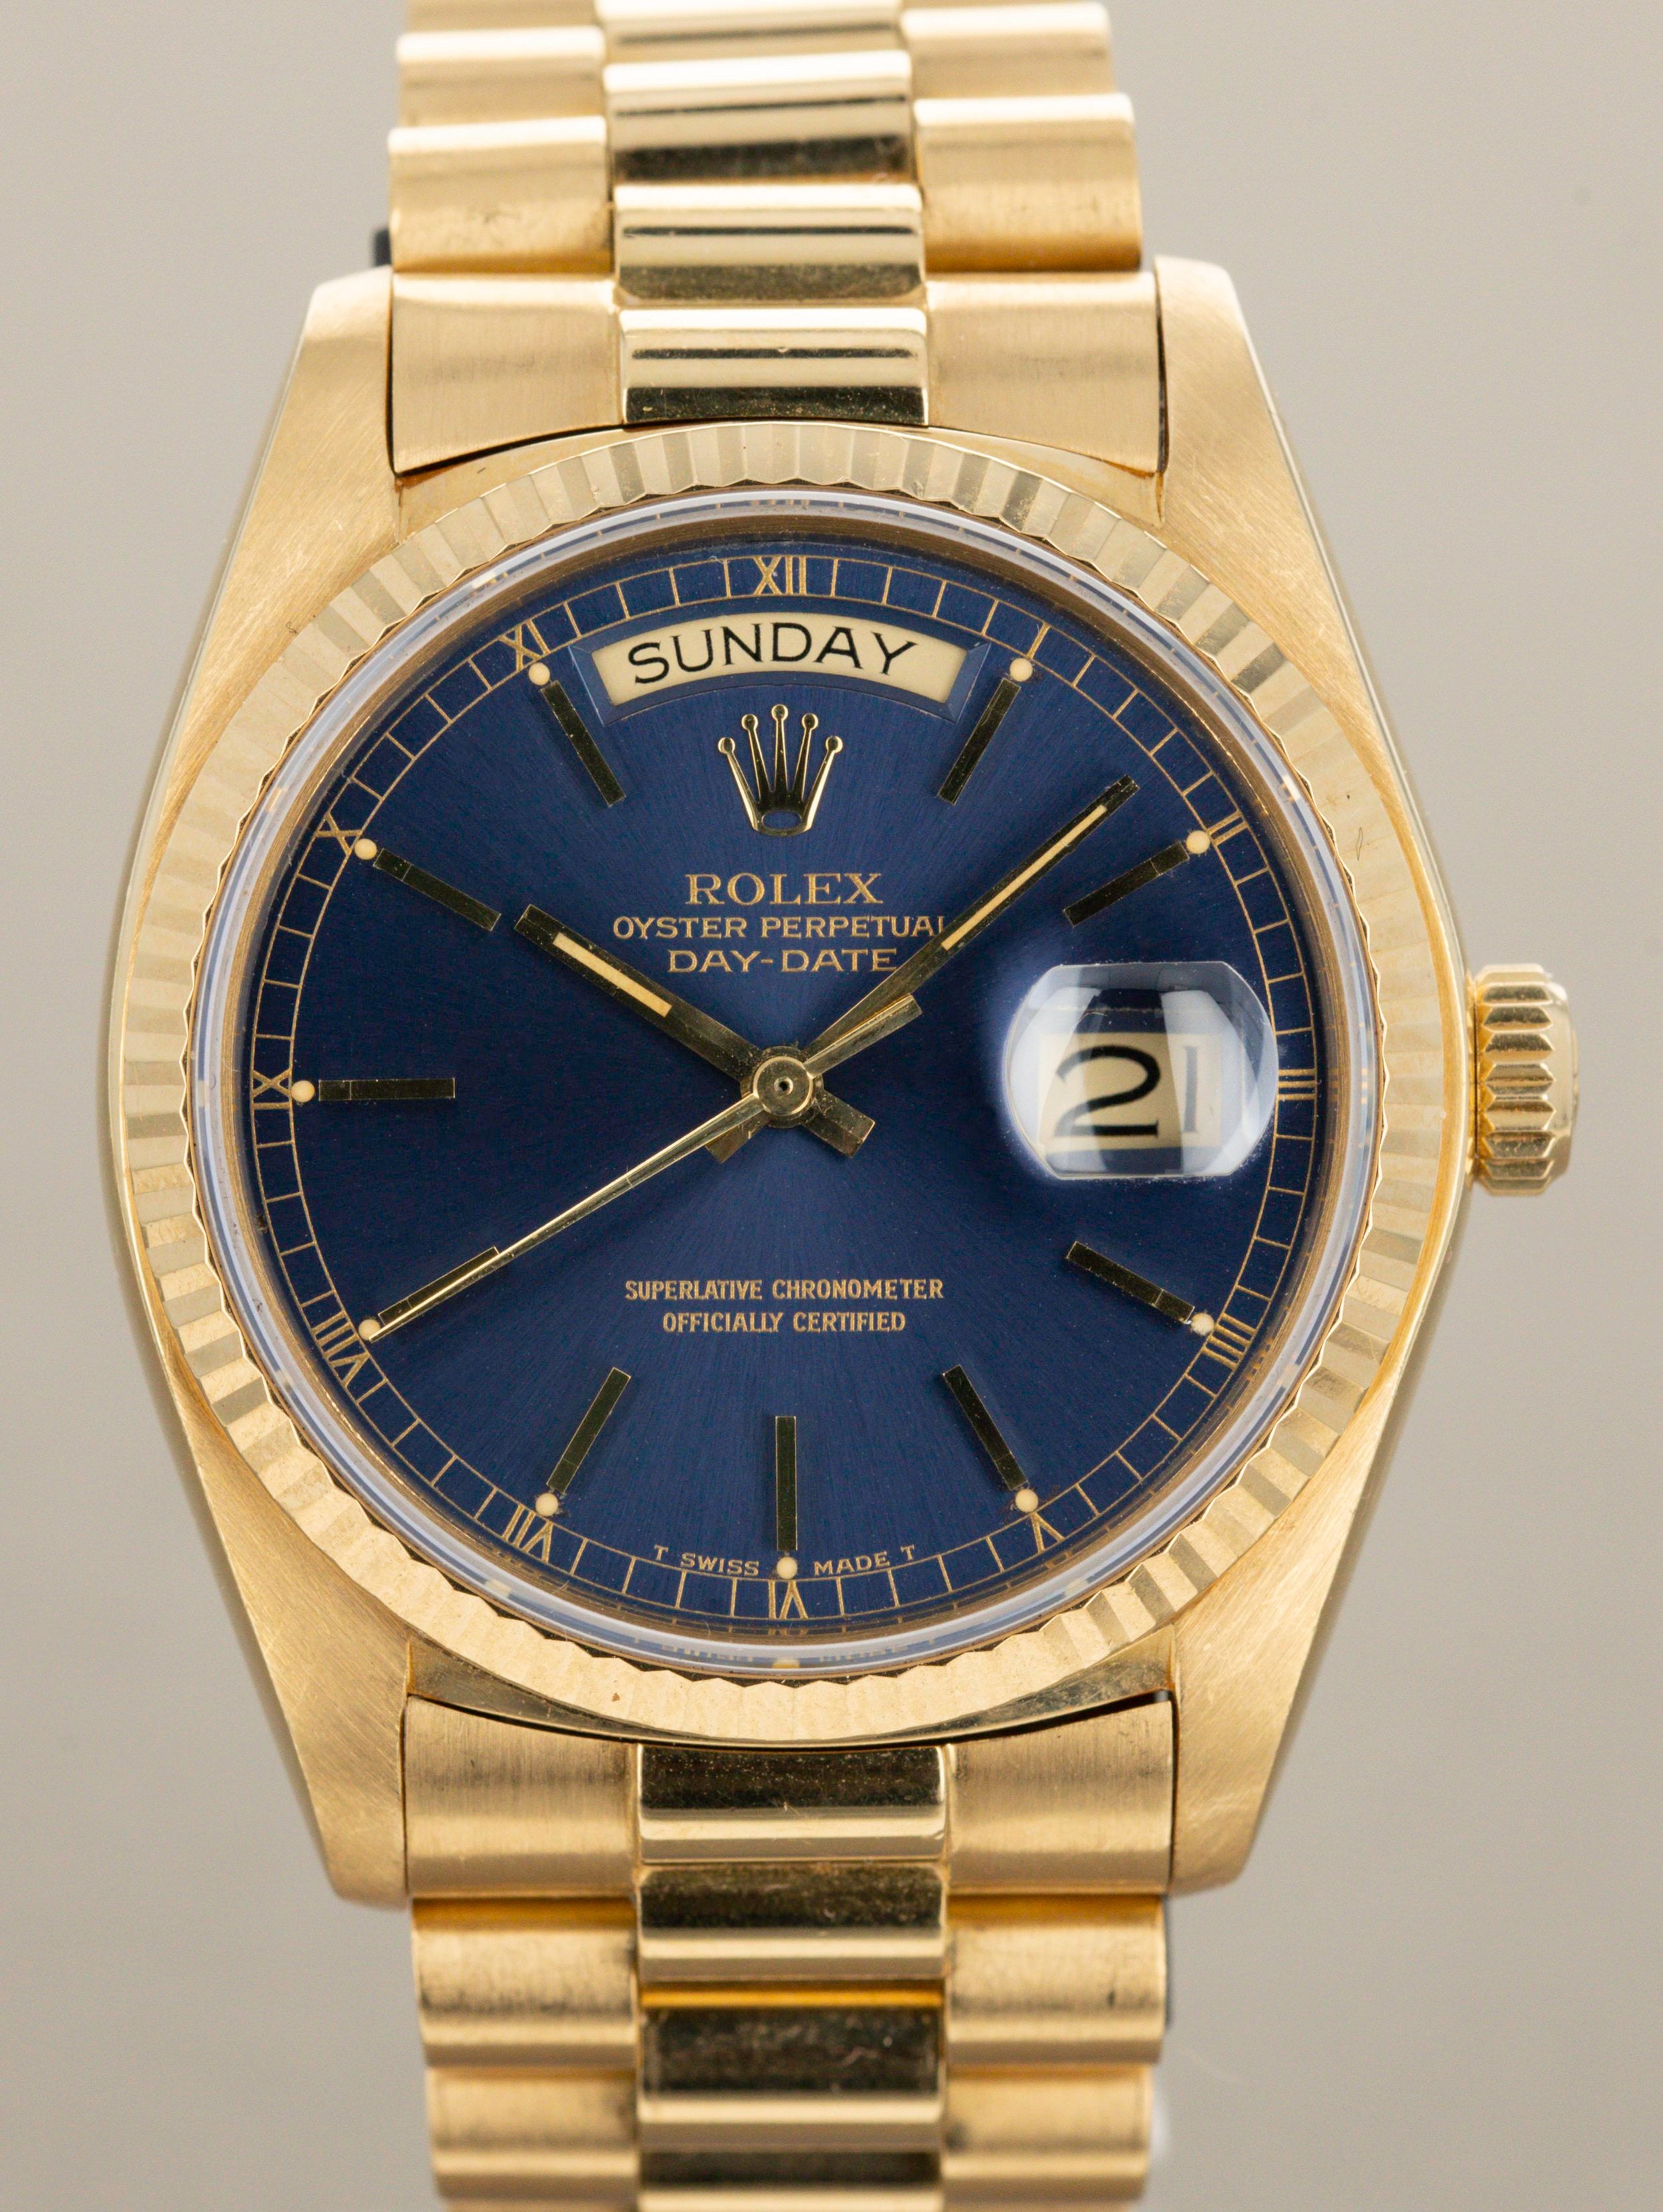 Rolex Day-Date Ref. 18038 - Blue Sunburst Dial, Original Owner Watch